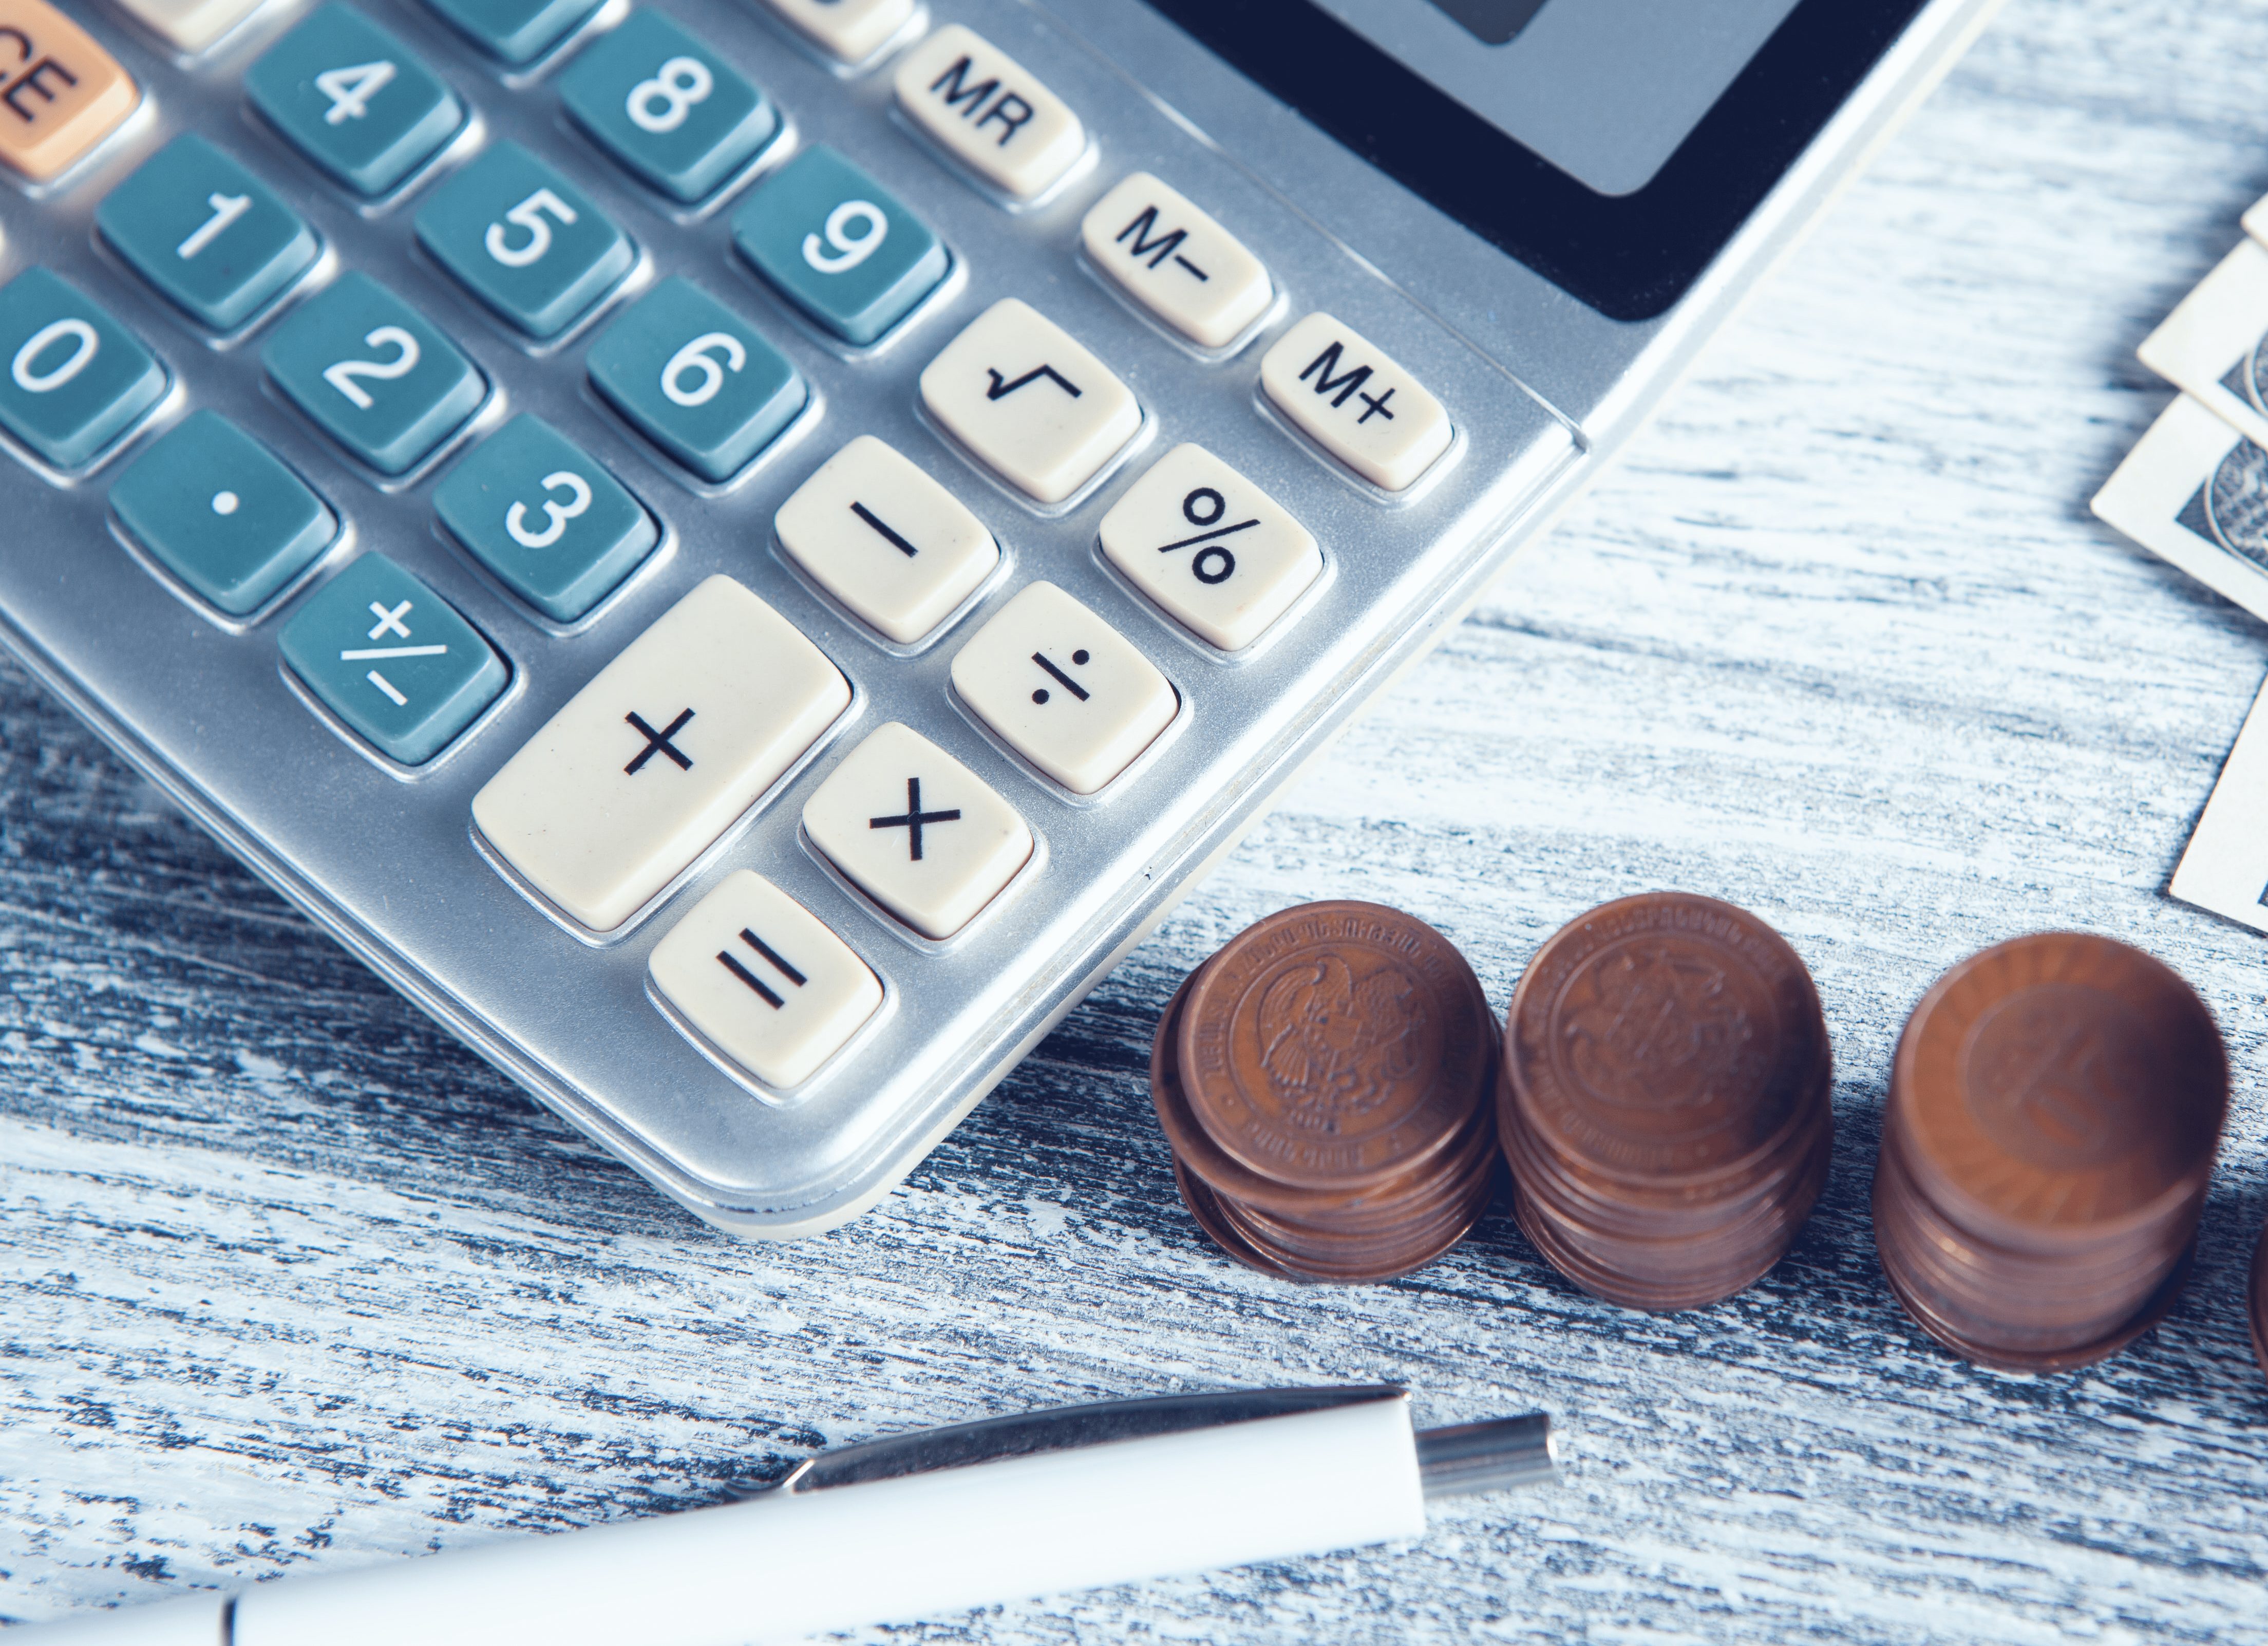 Foto de calculadora ao lado de moedas e uma caneta.